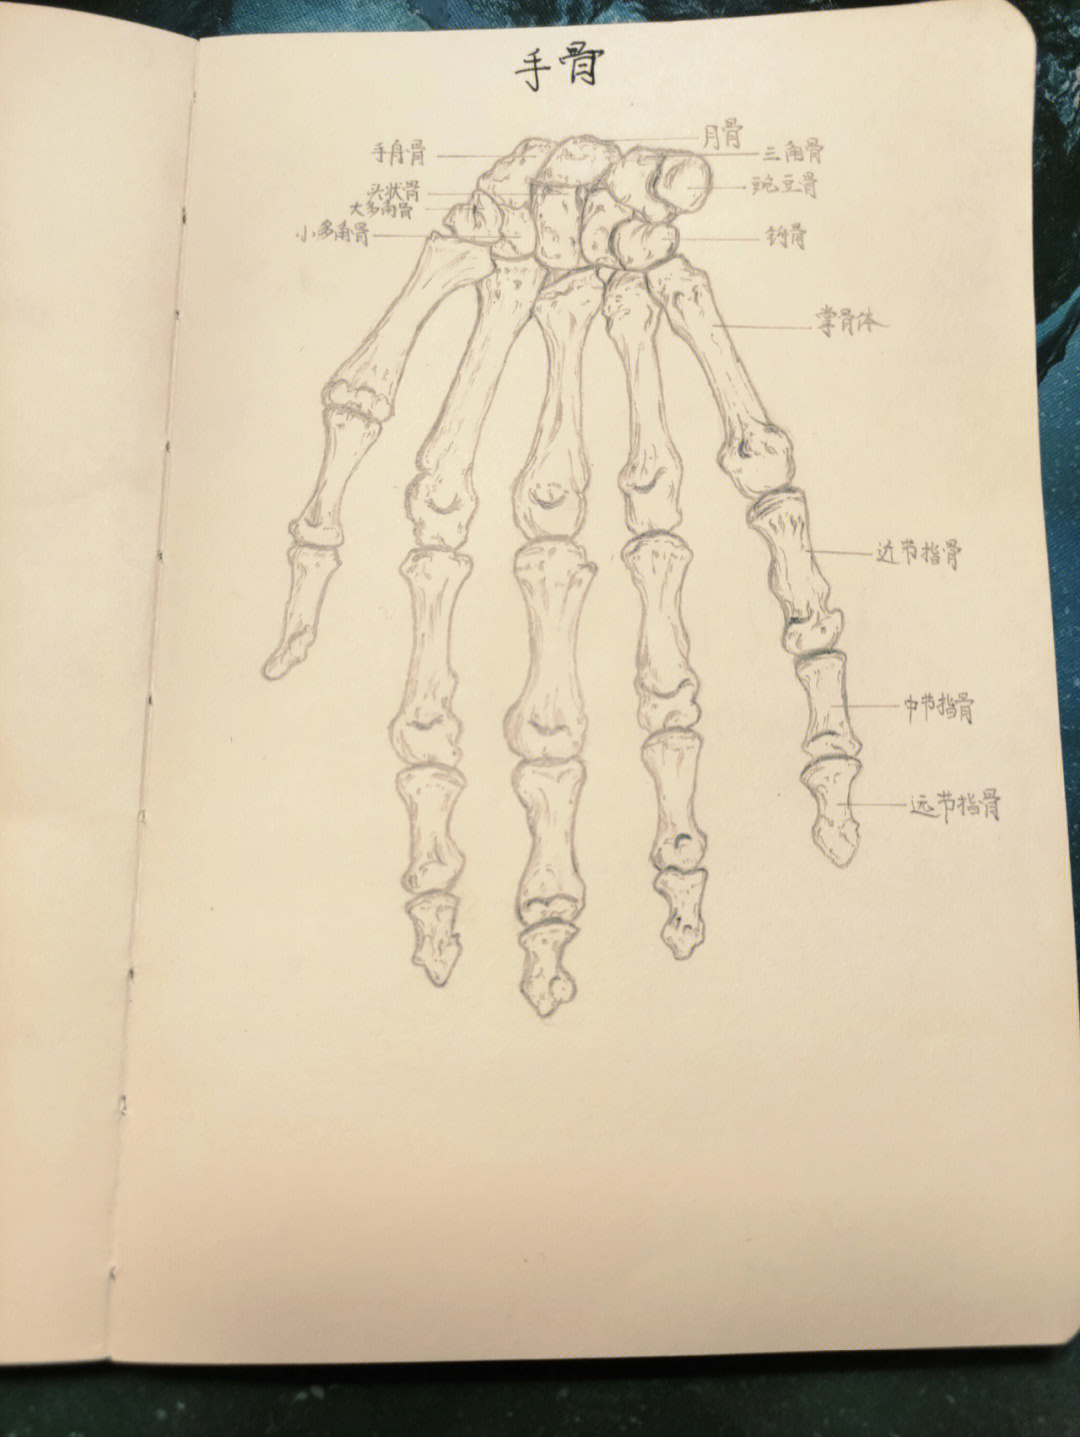 上肢骨解剖图